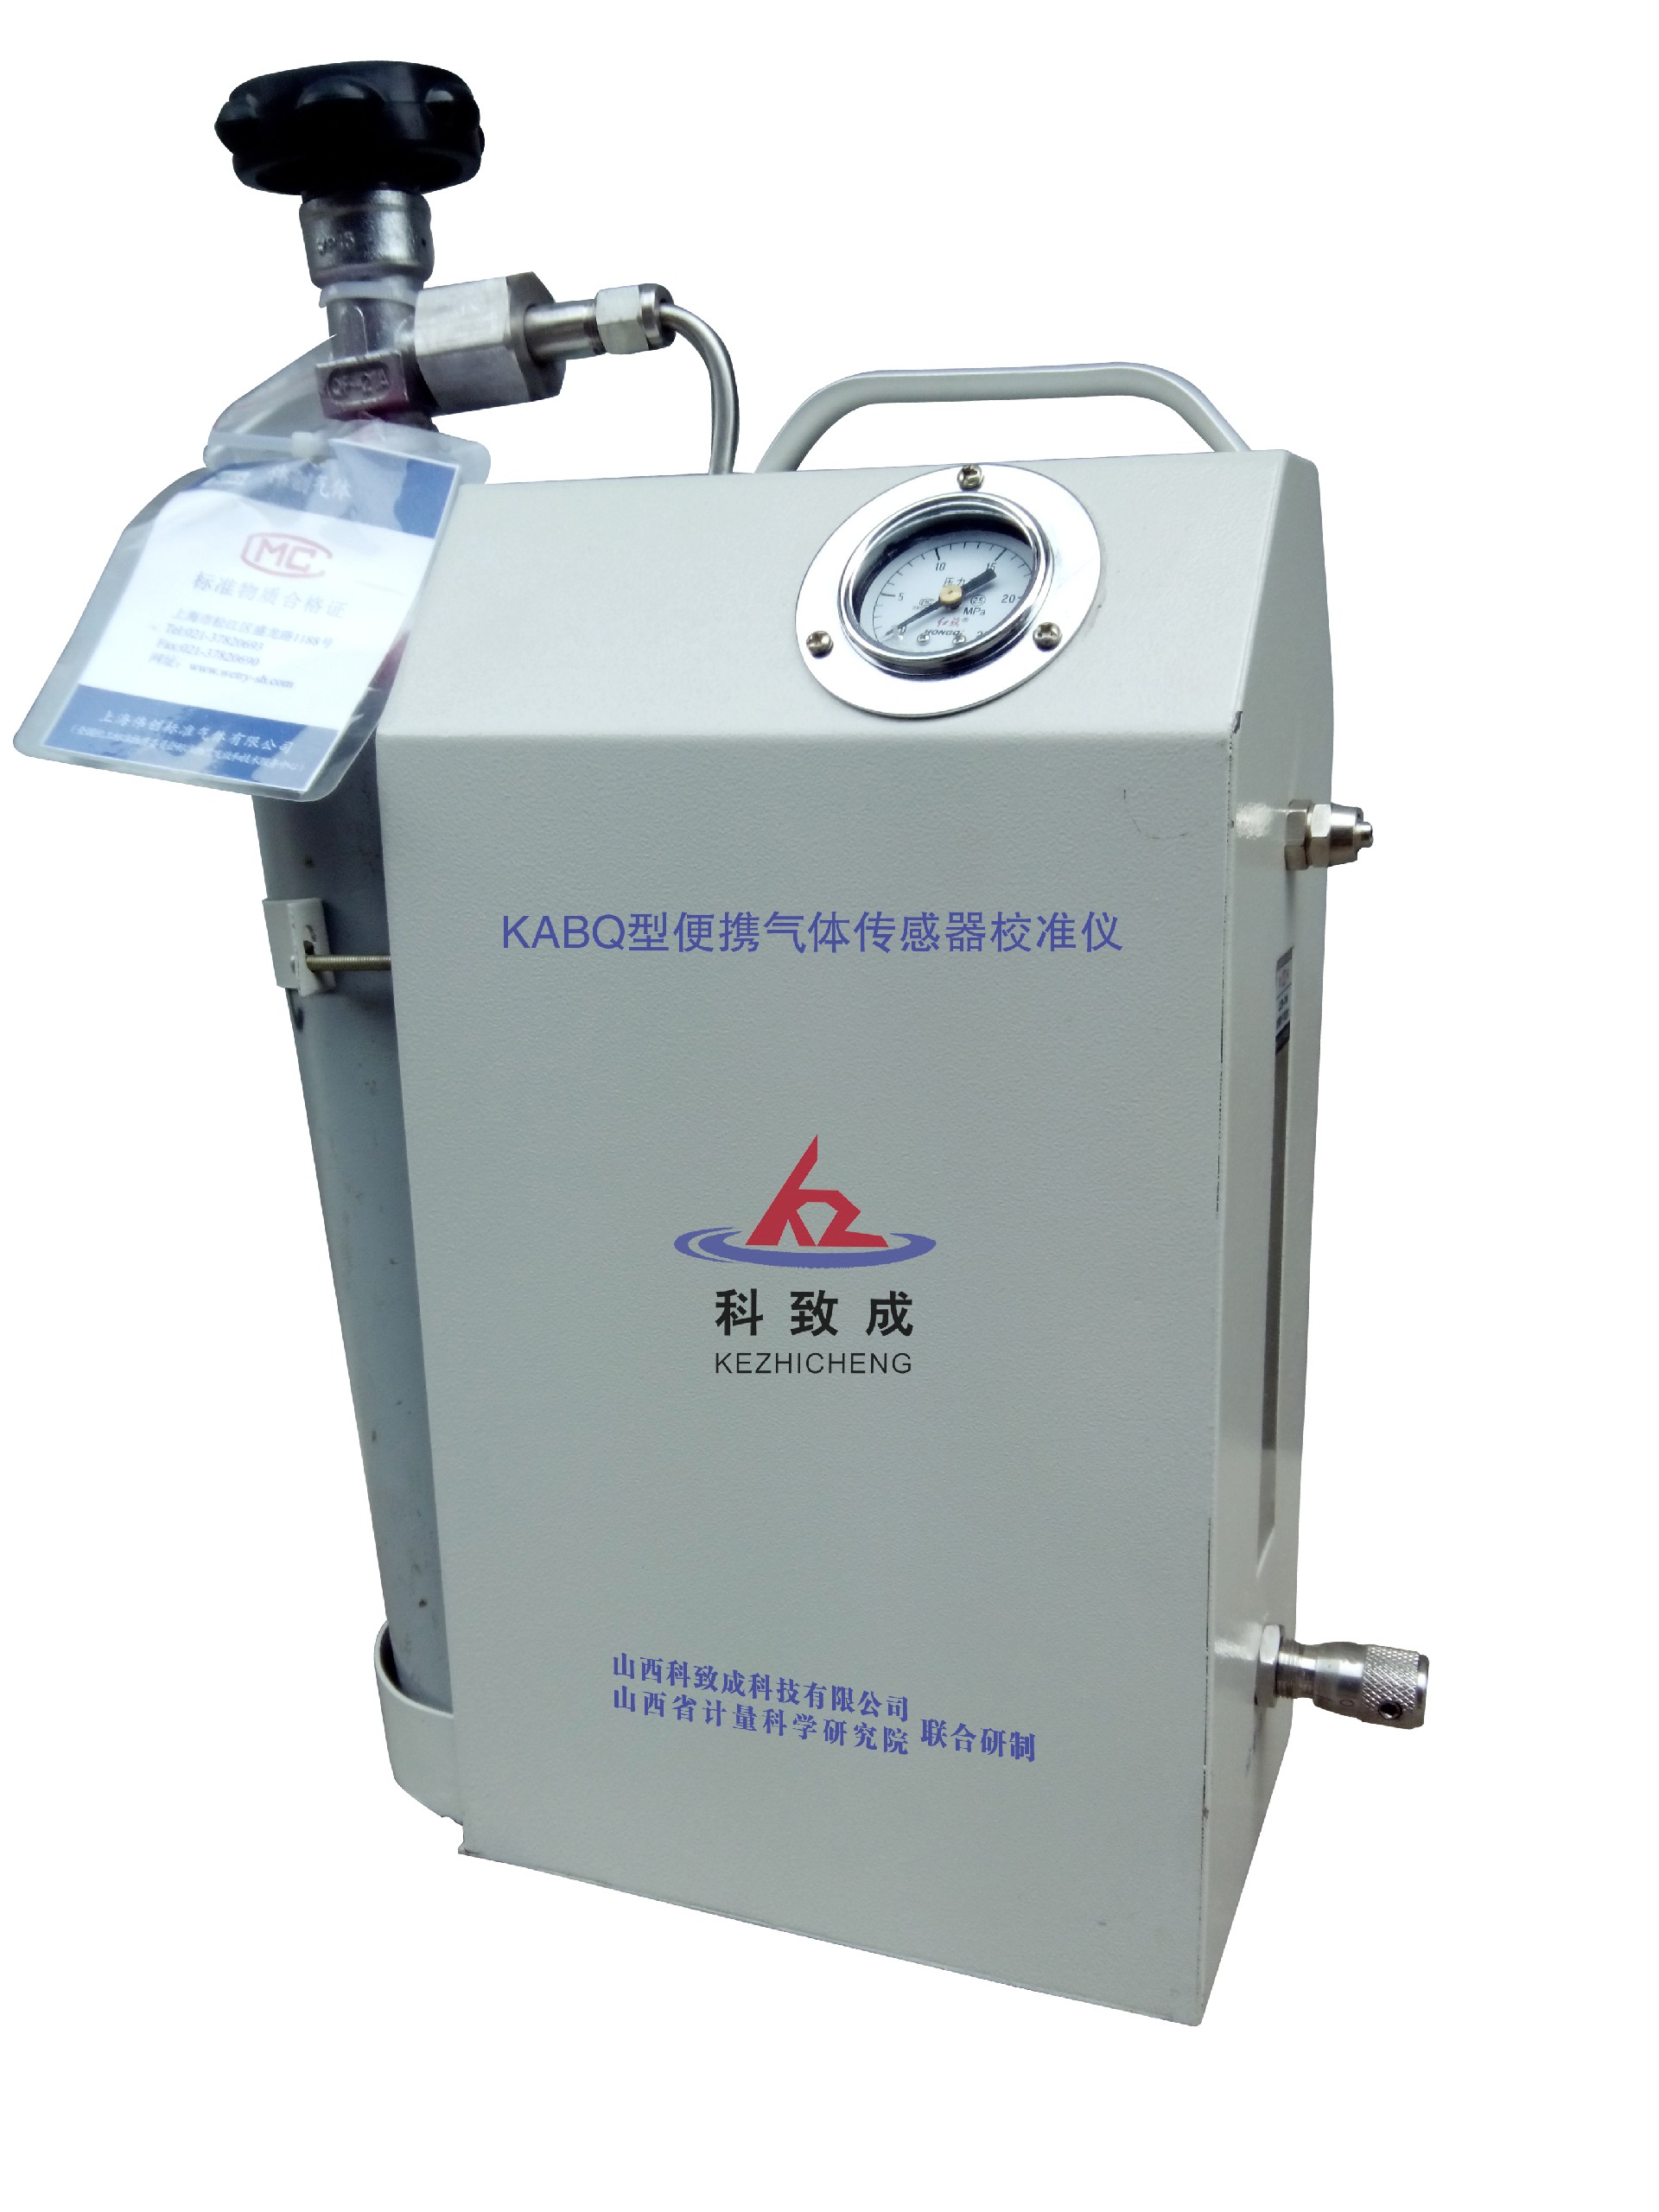 锡林郭勒KABQ型便携气体传感器校准仪